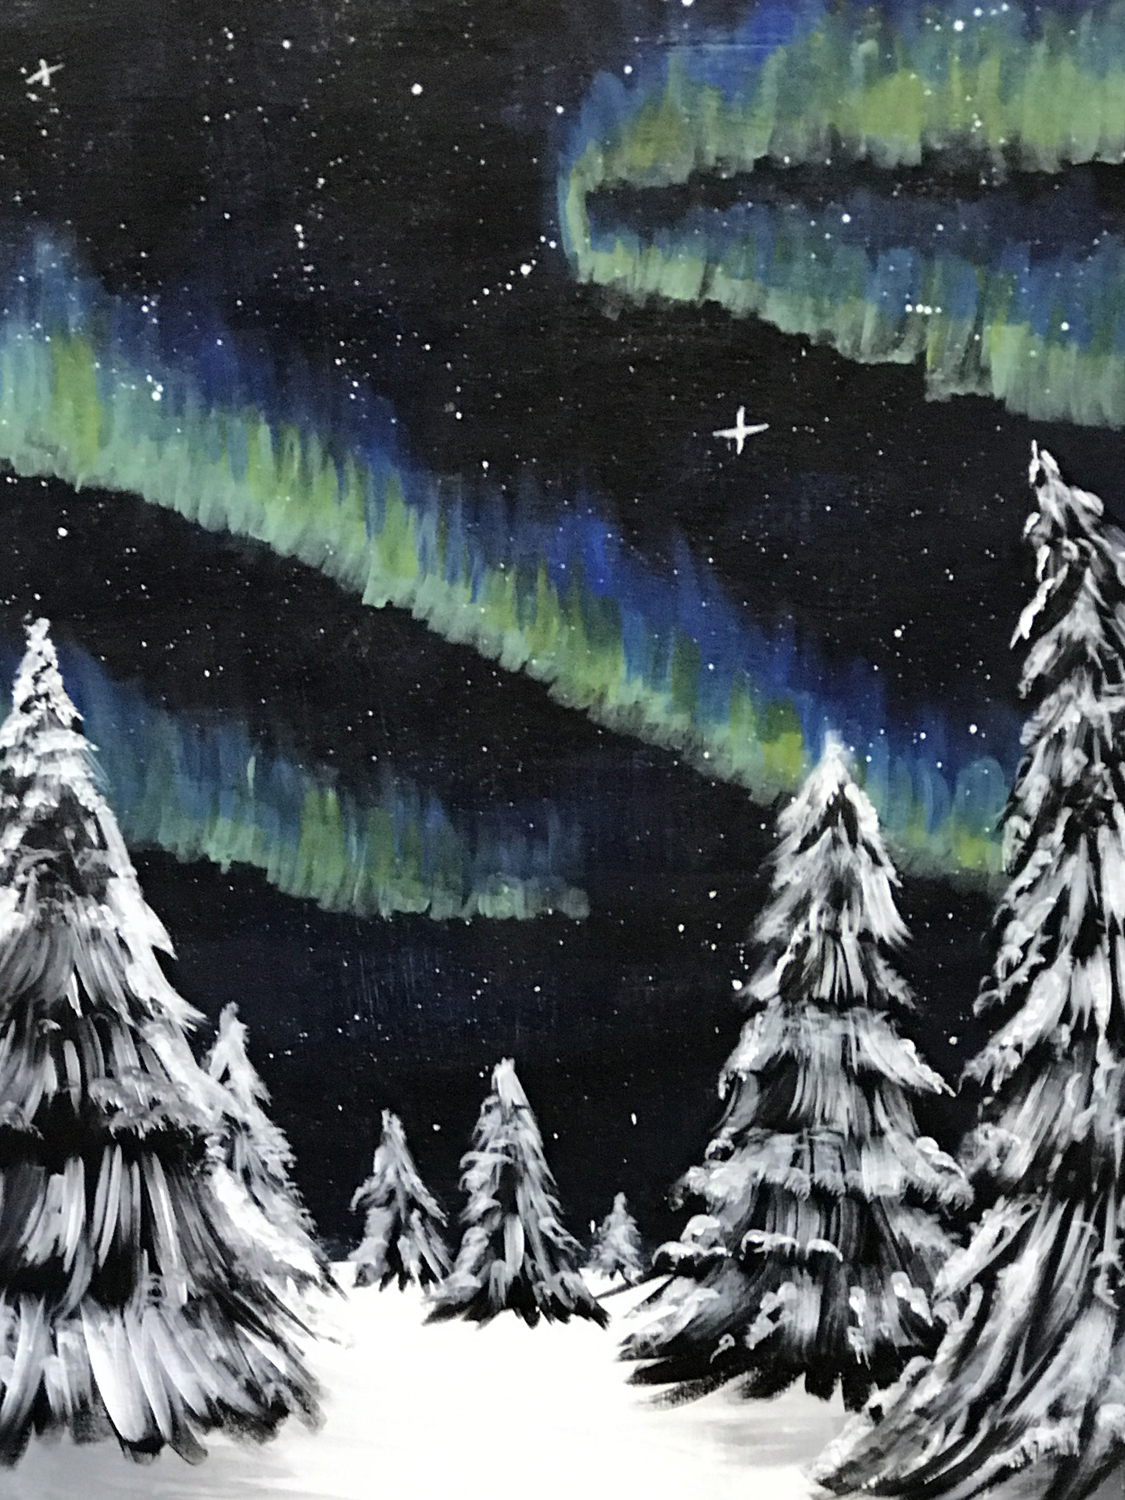 In Studio – Northern Lights Pines